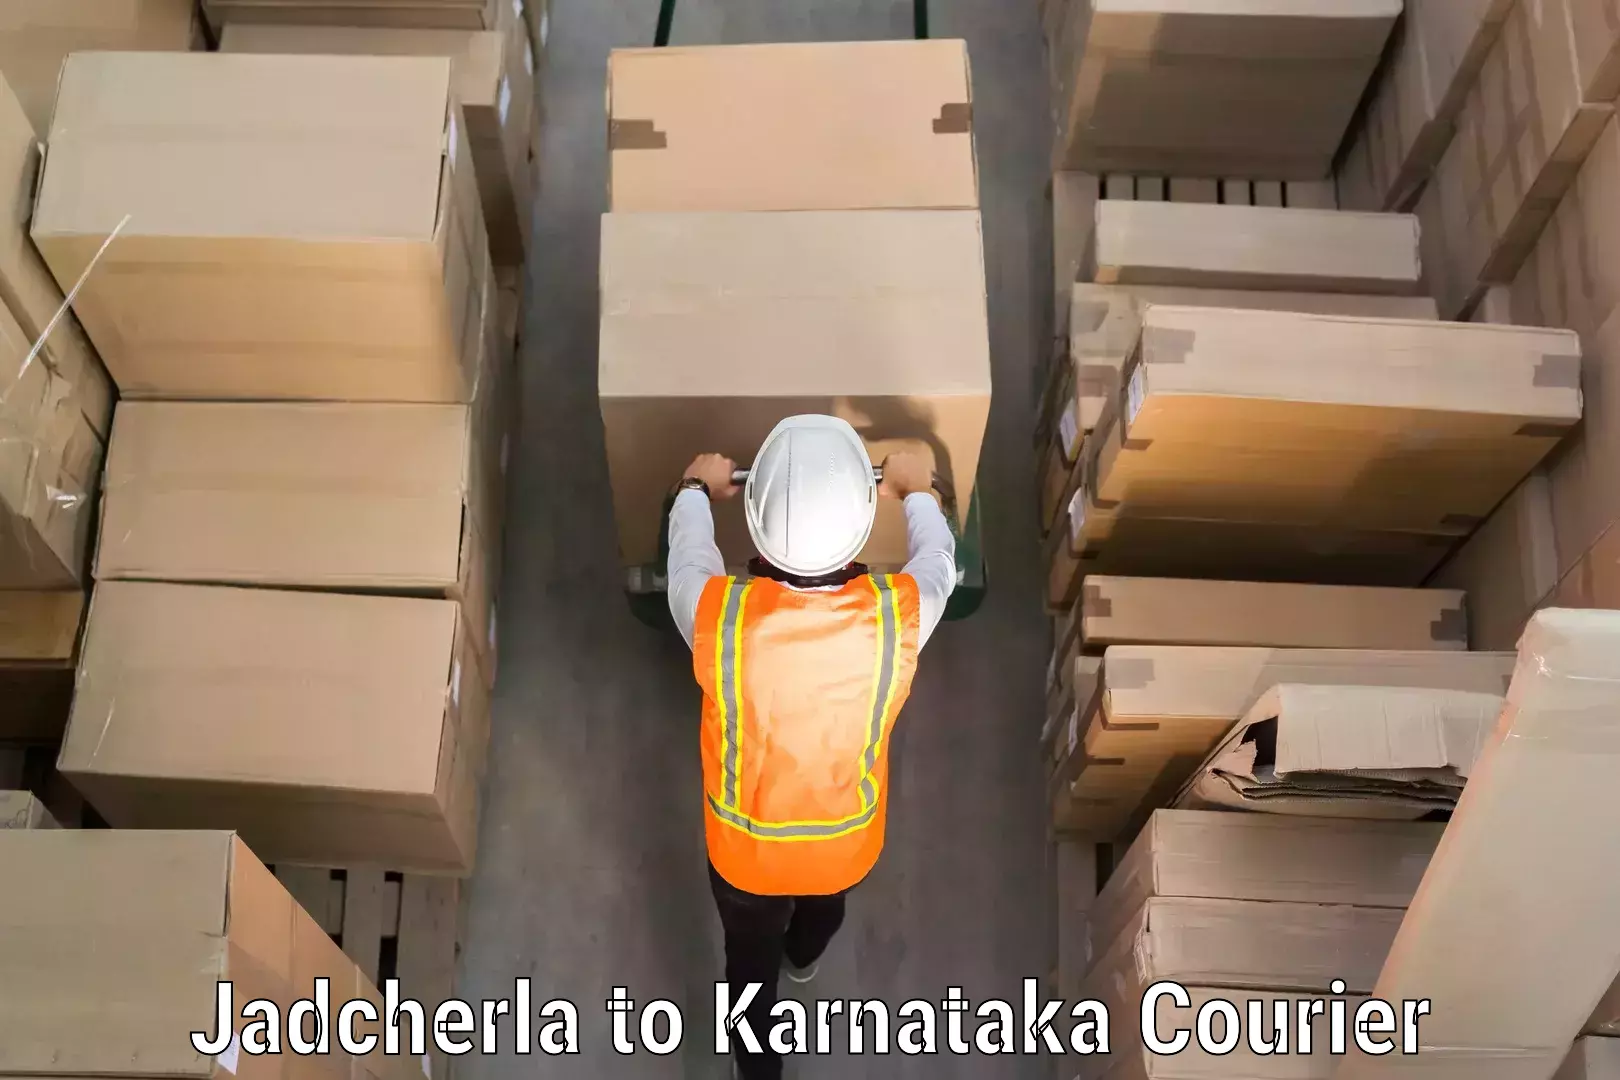 Luggage delivery system Jadcherla to Karnataka